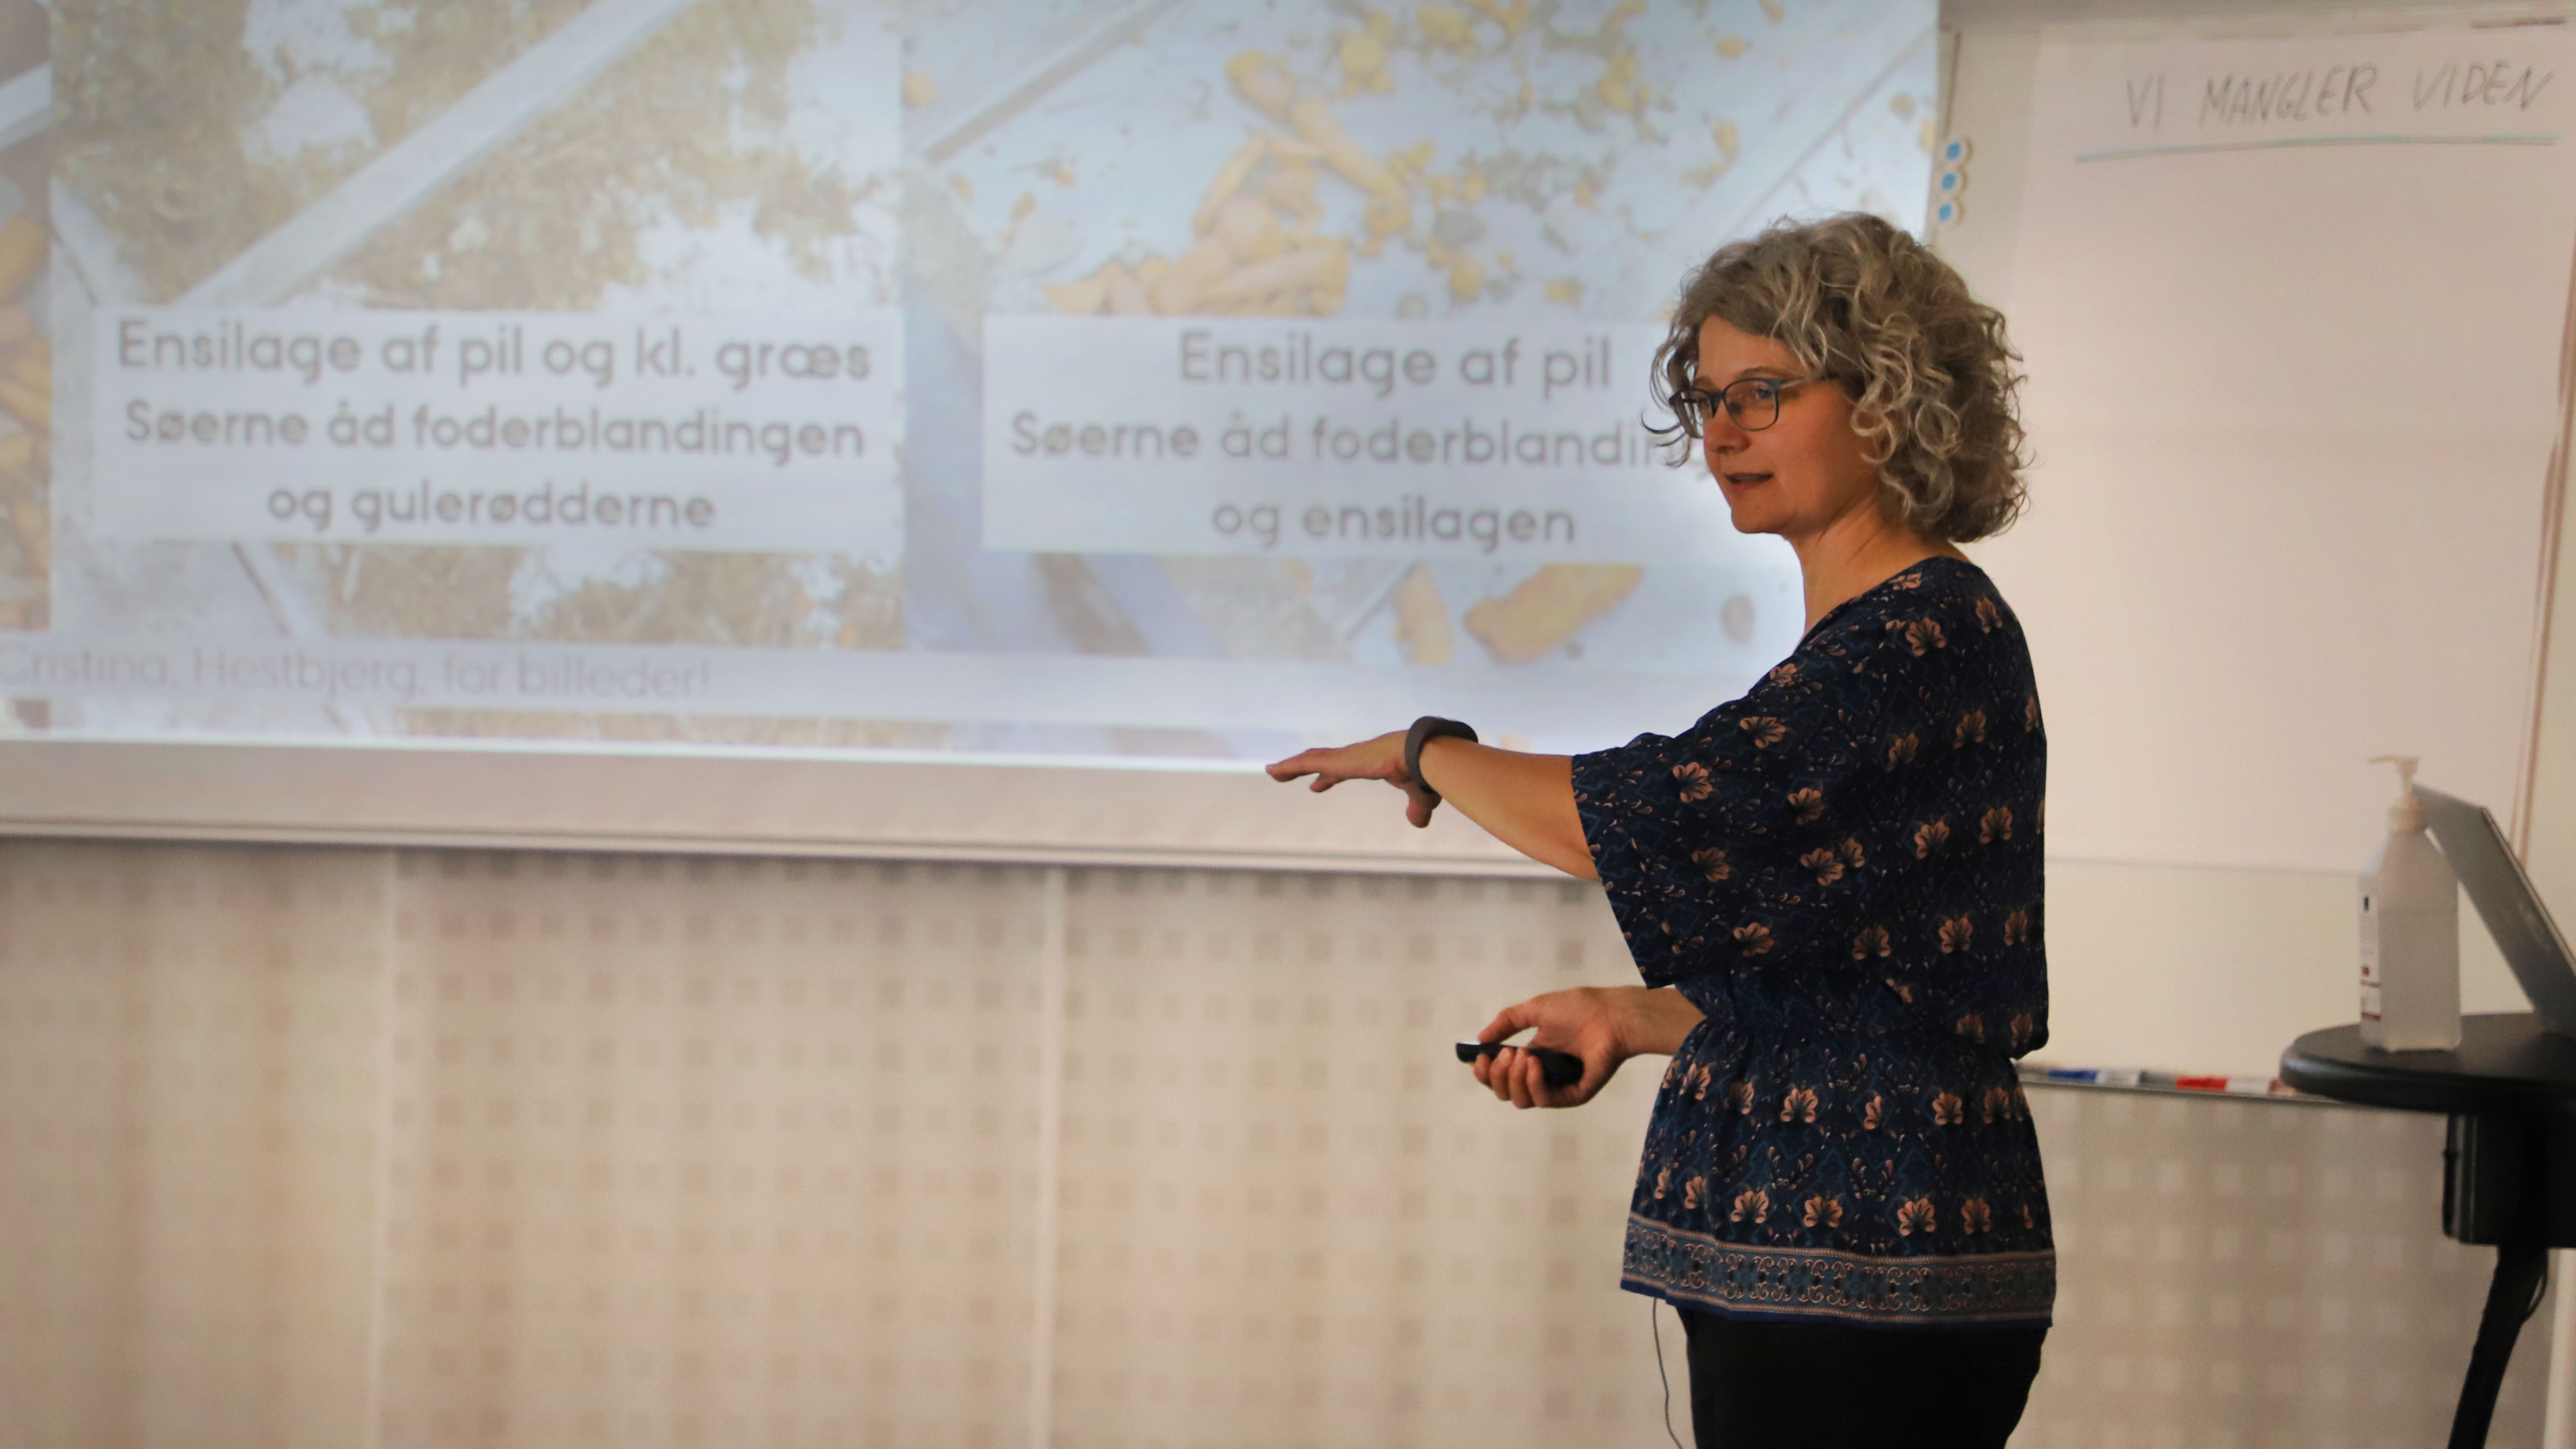 Anne Grete Kongstad redegør for resultaterne af søernes blindsmagning